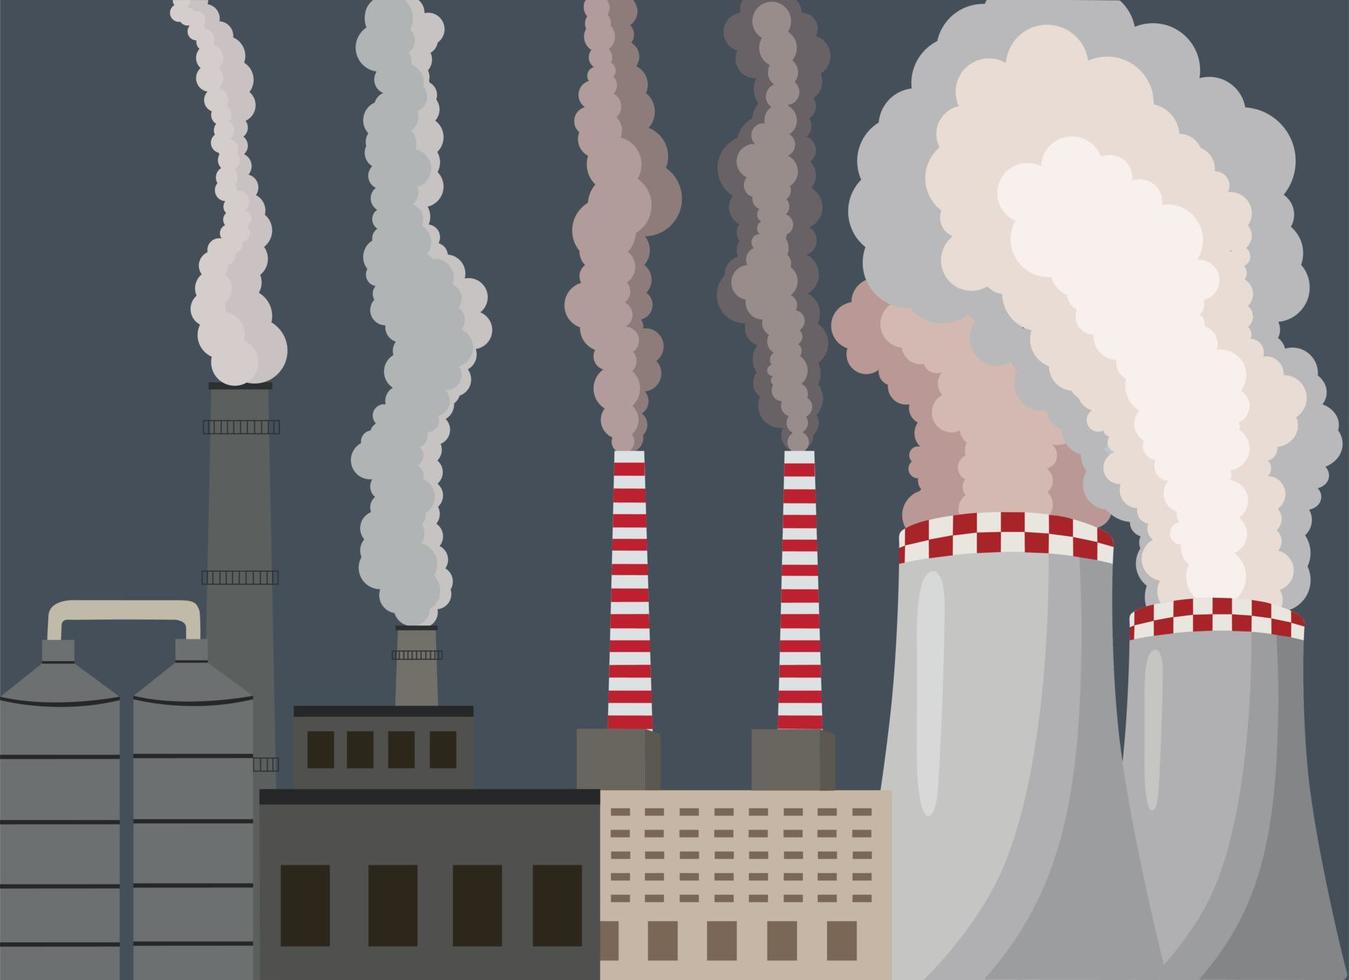 aria inquinamento. industriale fabbrica. scarico gas contaminare urbano atmosfera. tossico smog.bene polvere, aria inquinamento, industriale smog, inquinante gas emissione. vettore illustrazione.